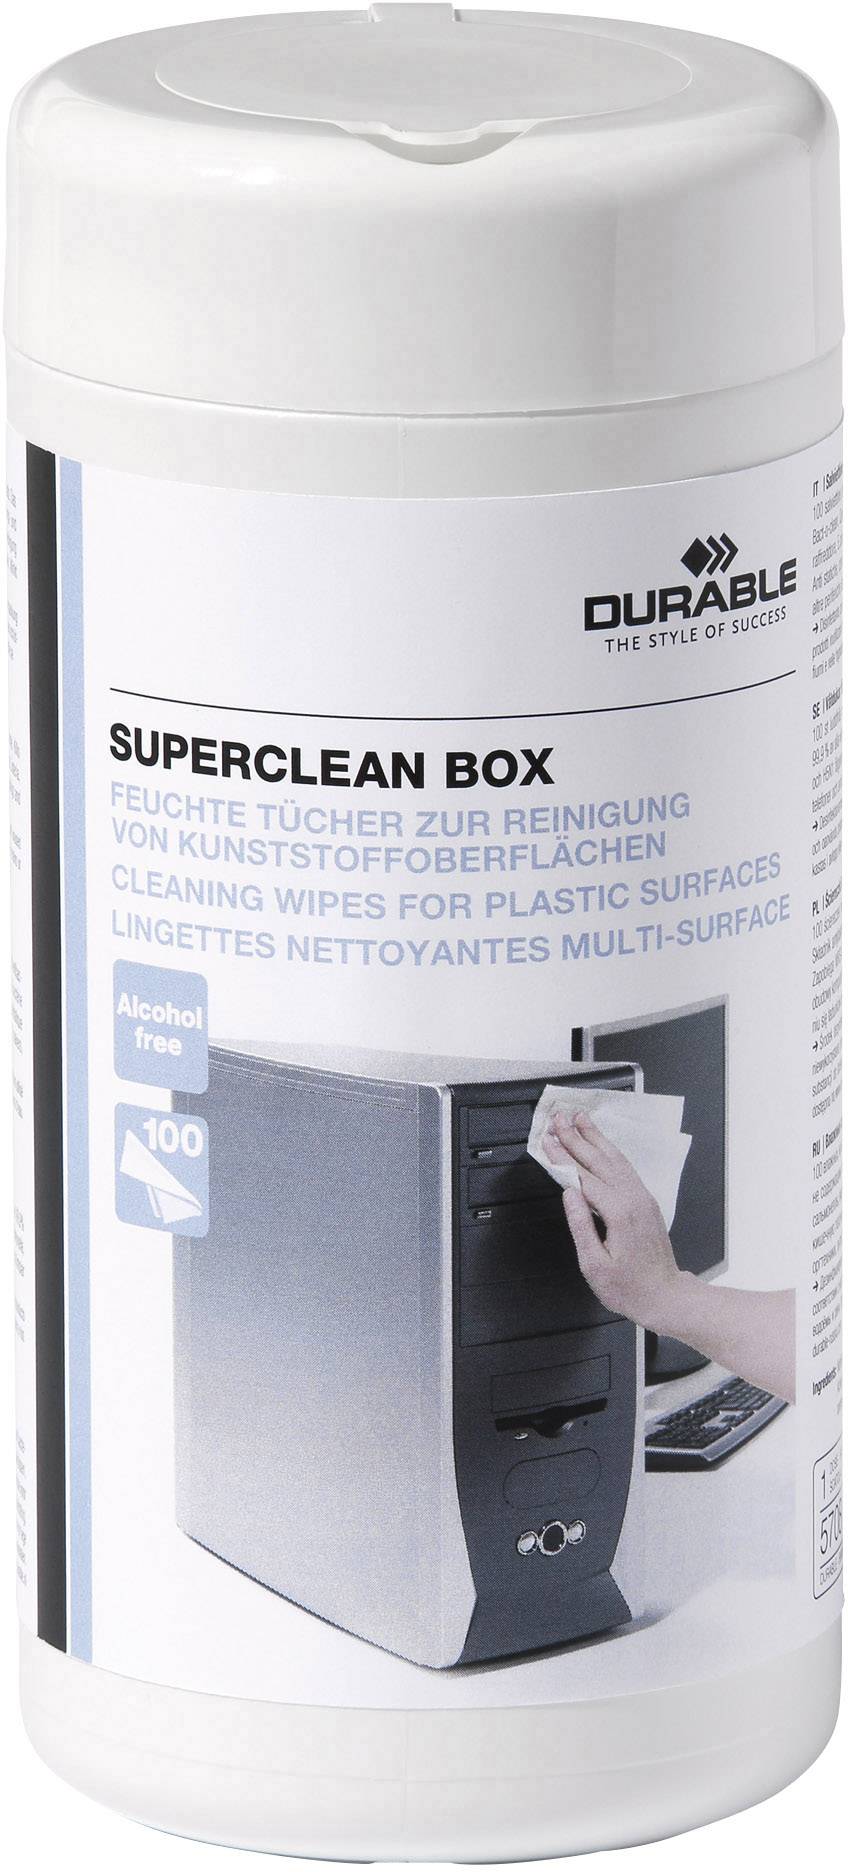 DURABLE Superclean Box - Reinigungstücher (Wipes) - weiß (5708-02)